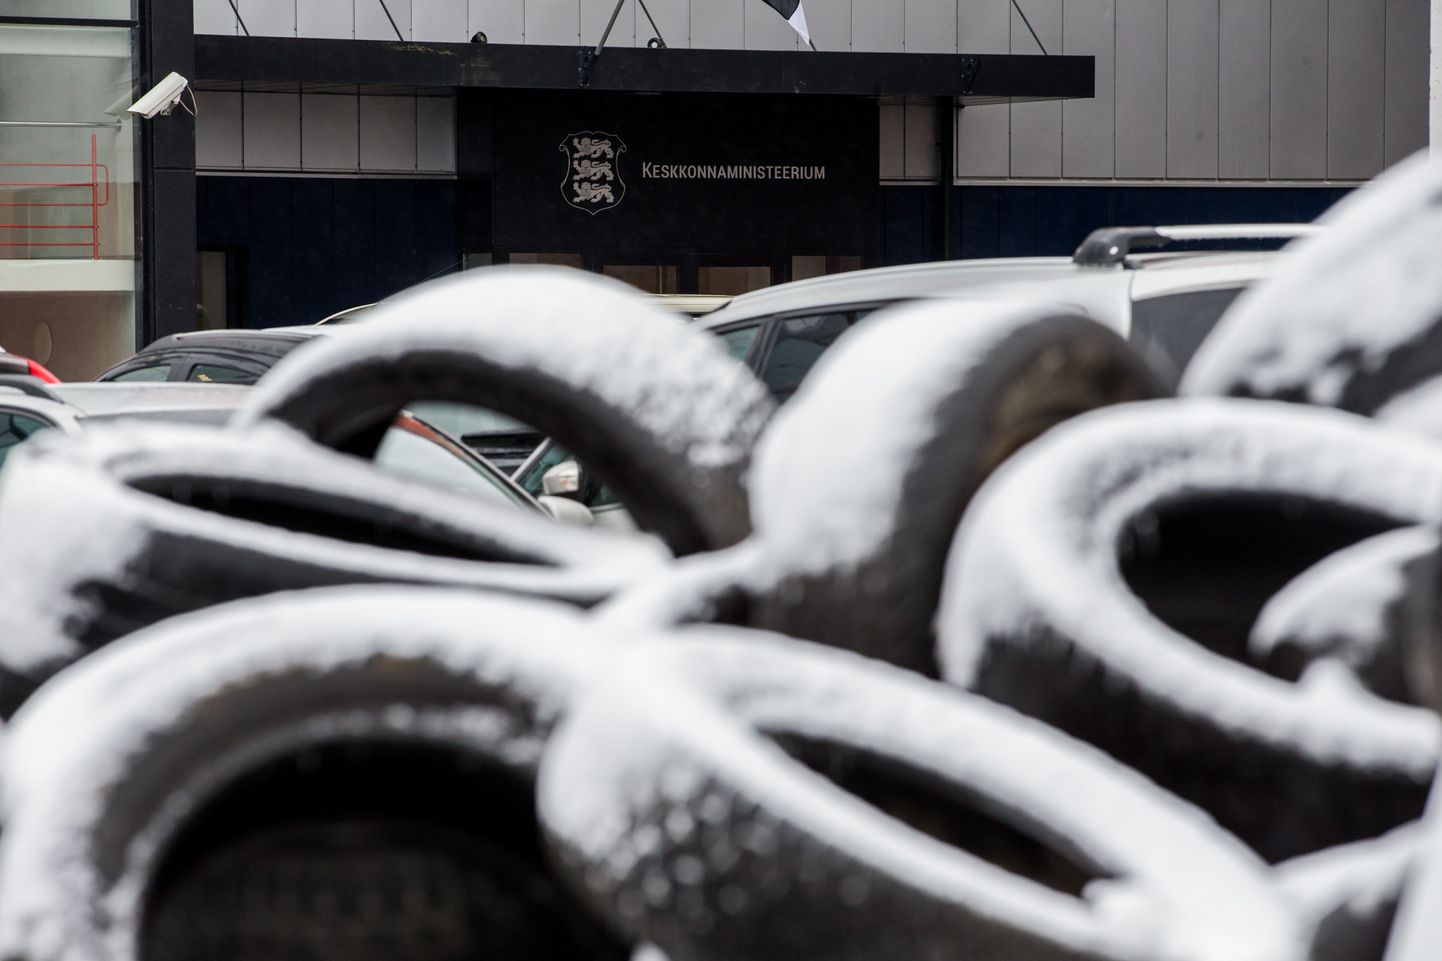 Протестная акция Шинного союза, в рамках которой перед зданием Министерства окружающей среды выгрузили пять тонн старых шин